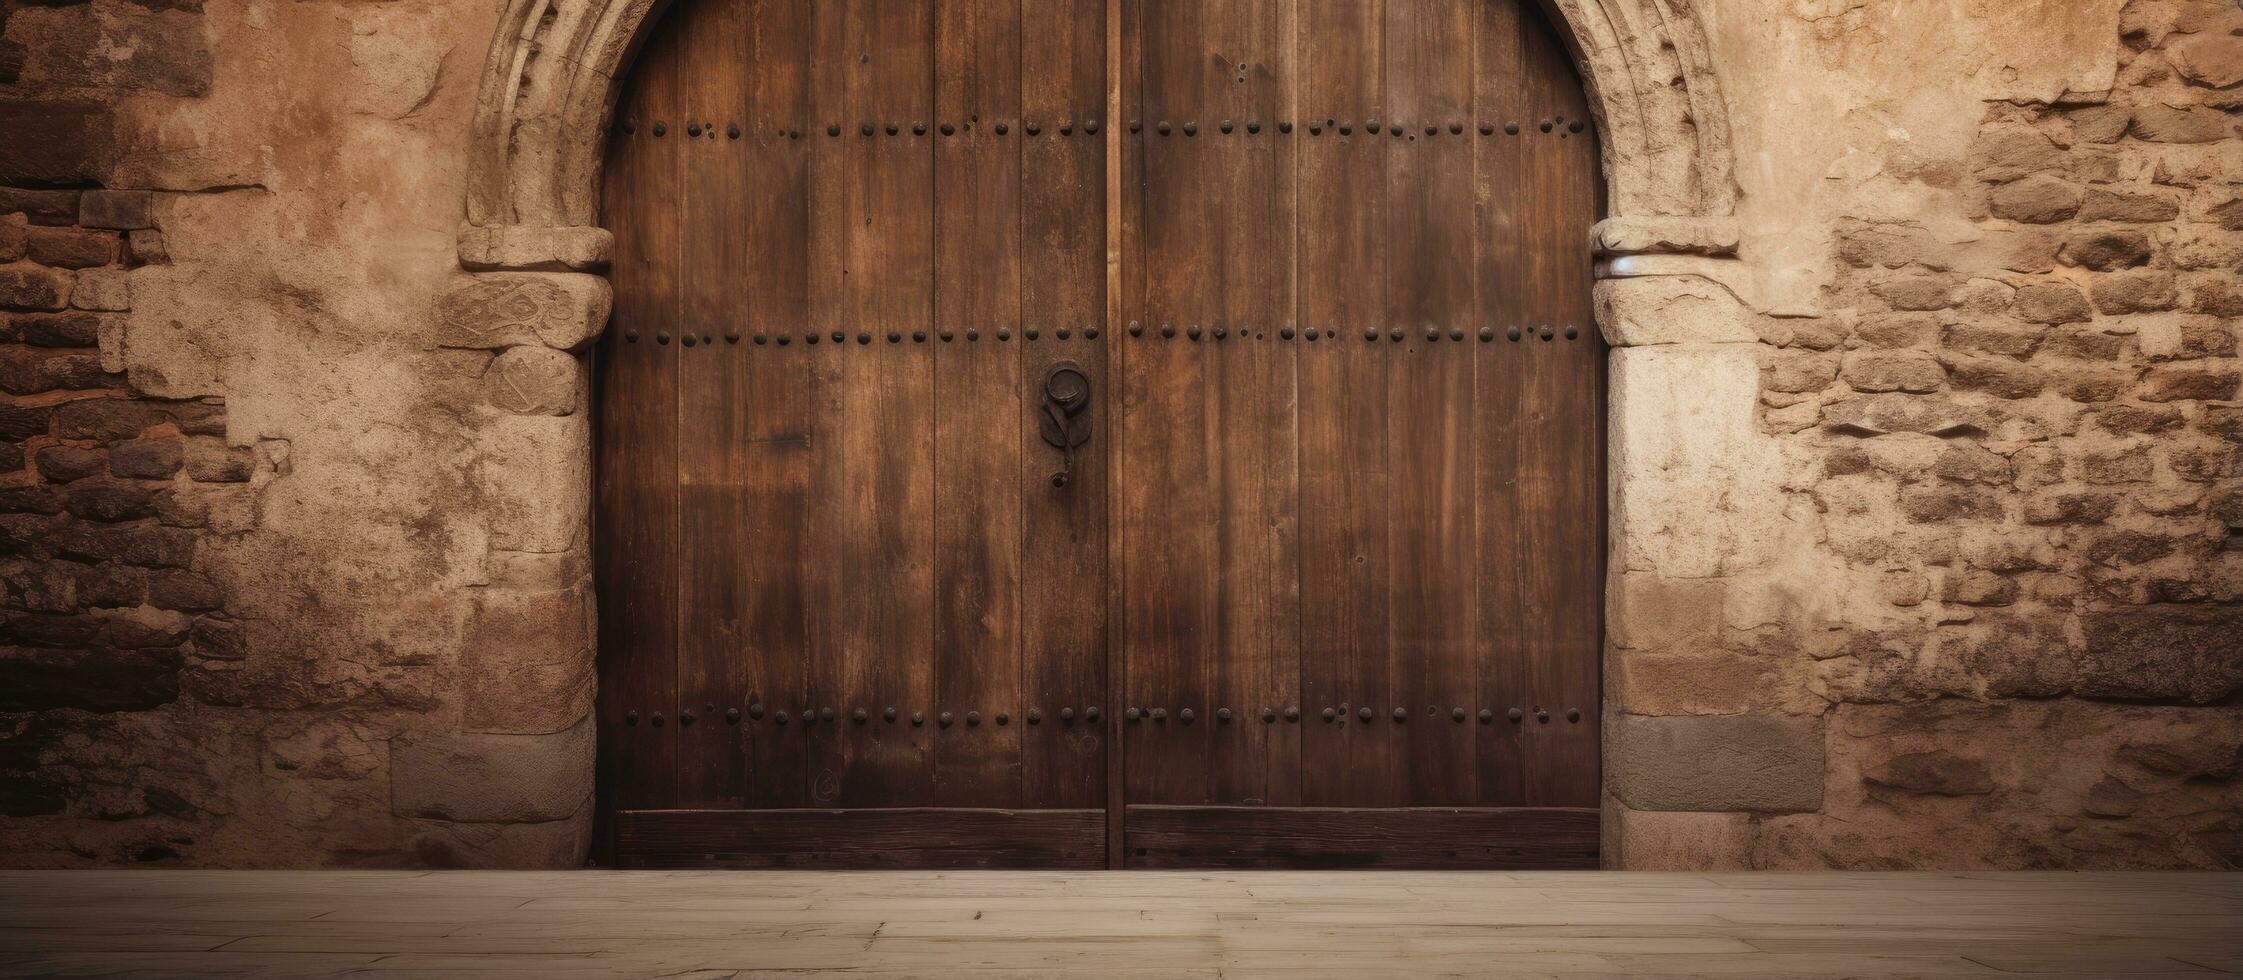 Antique door made of brown wood photo